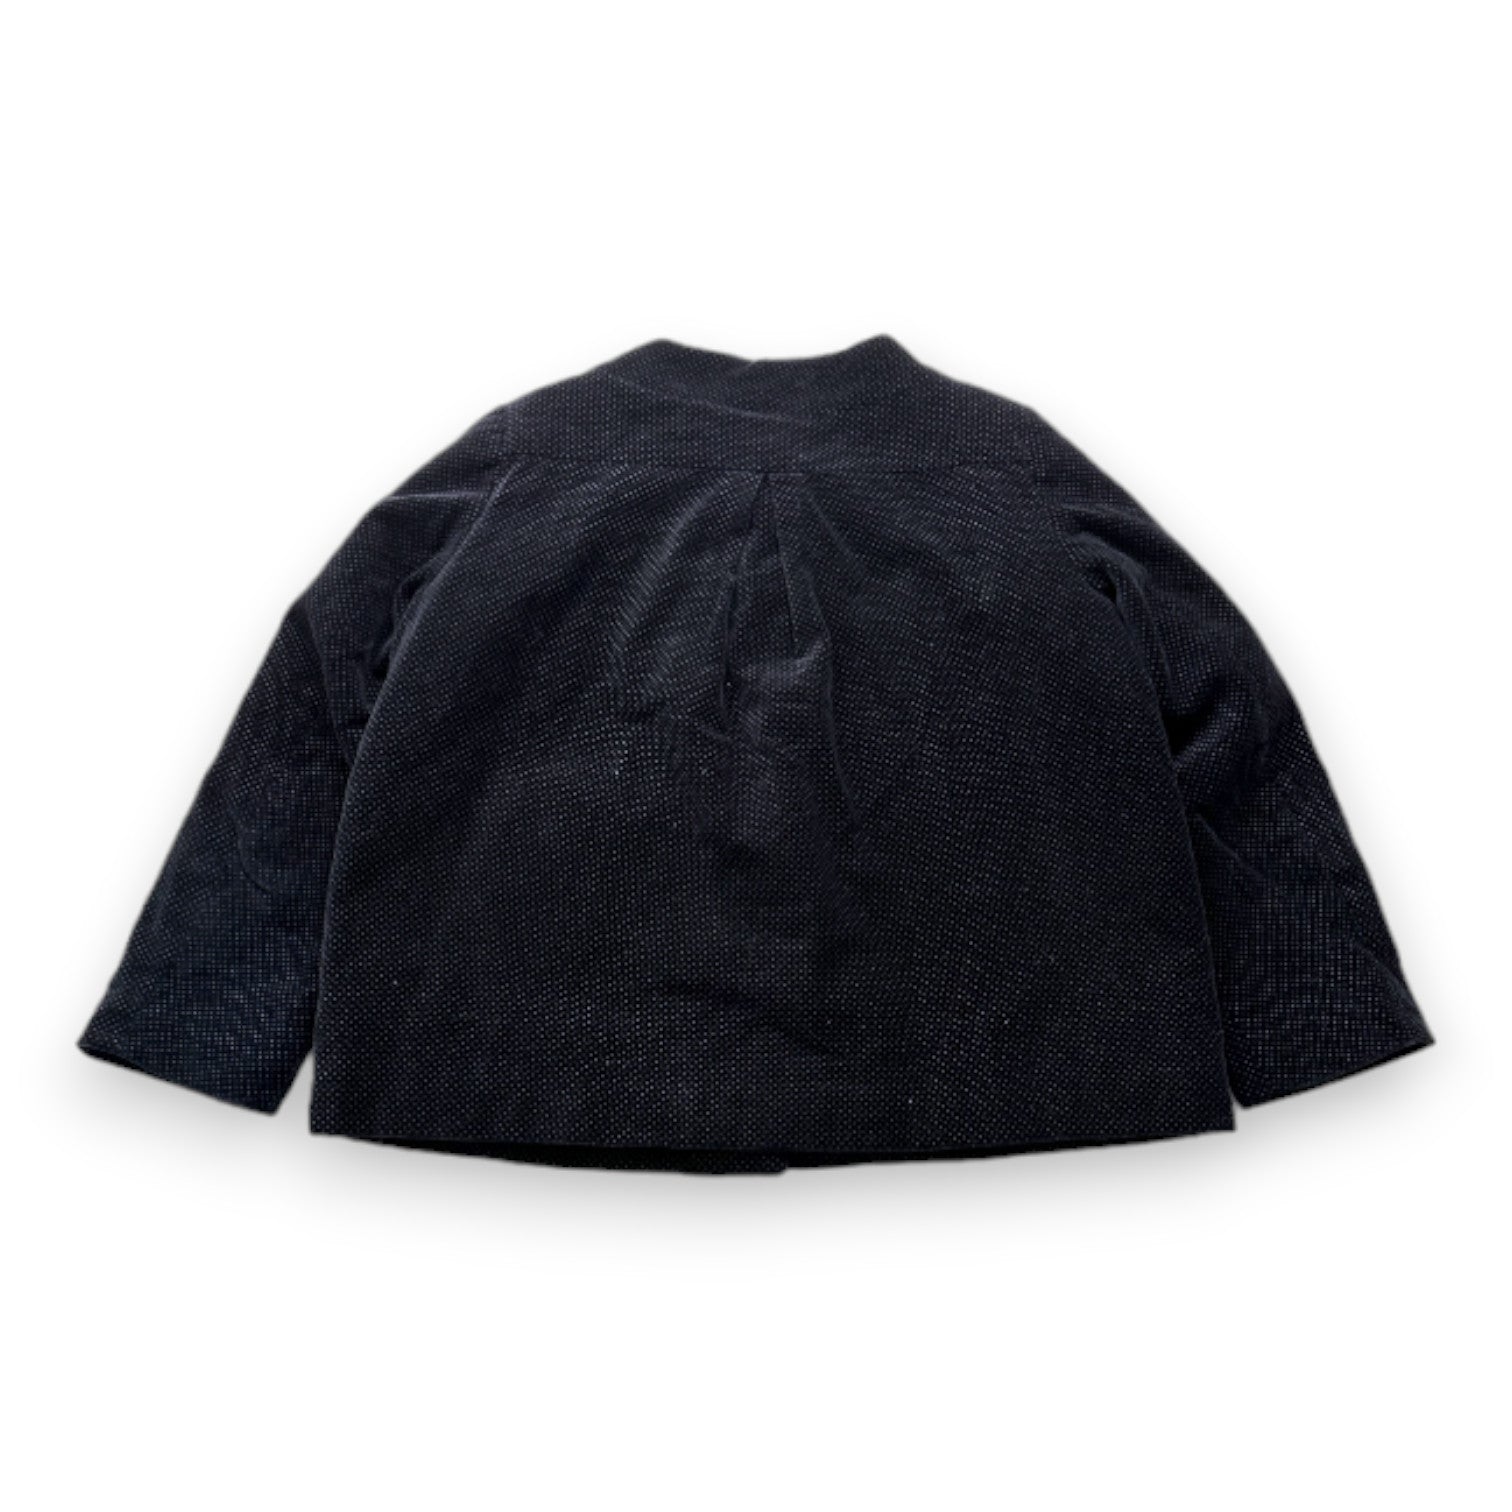 BONPOINT - Manteau noir à pois - 6 ans